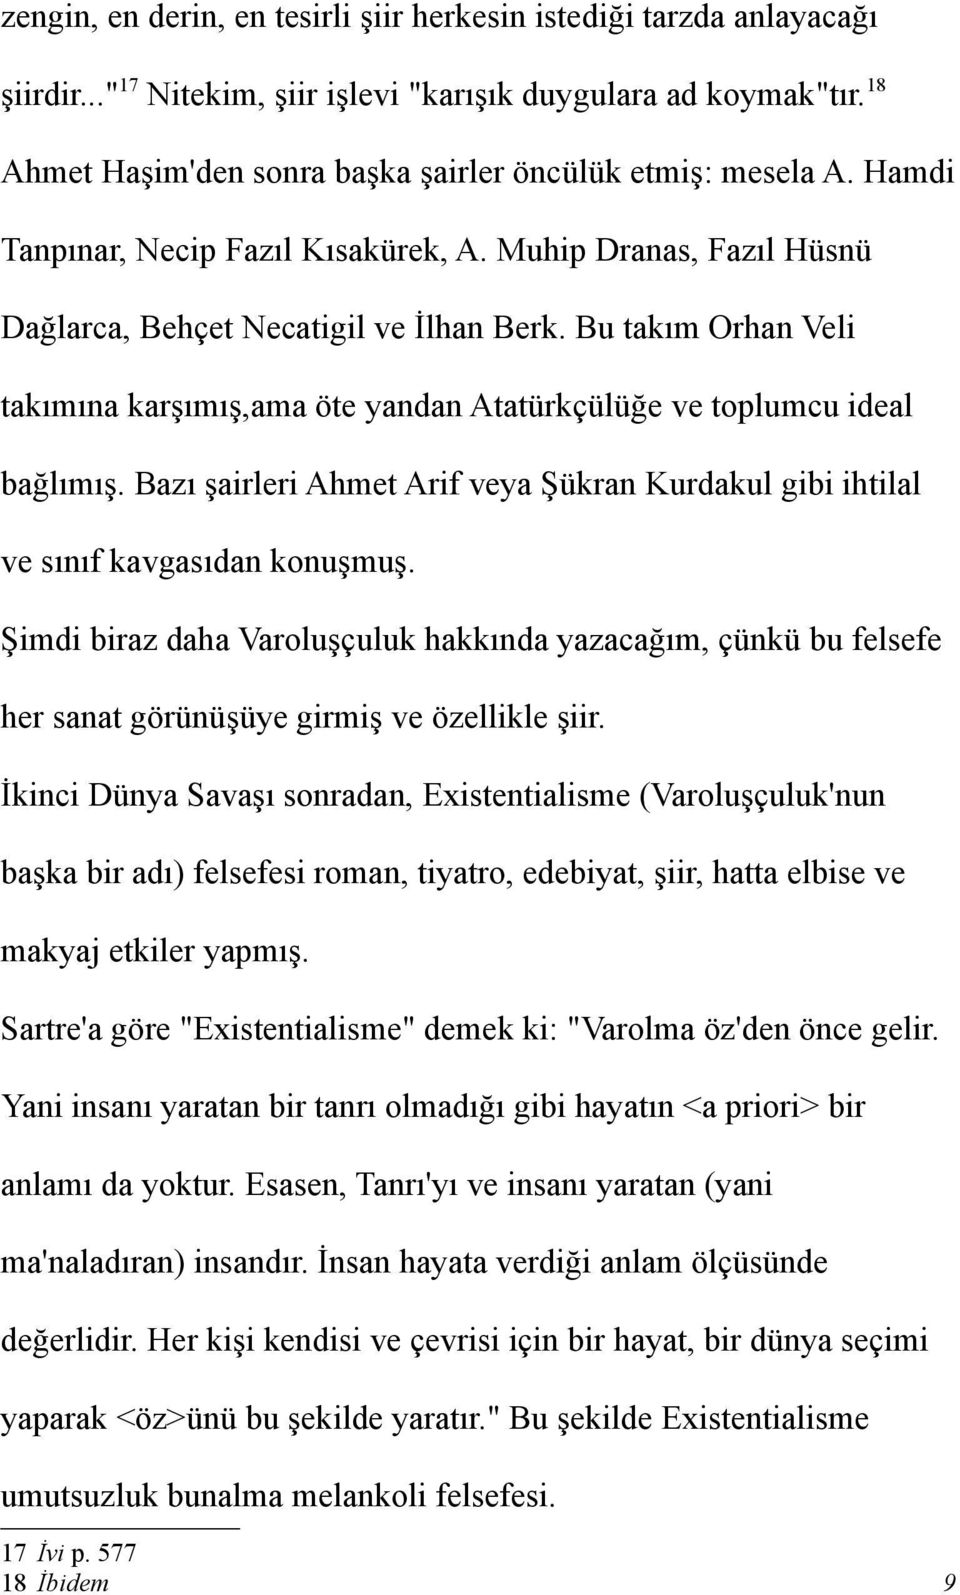 Bu takım Orhan Veli takımına karşımış,ama öte yandan Atatürkçülüğe ve toplumcu ideal bağlımış. Bazı şairleri Ahmet Arif veya Şükran Kurdakul gibi ihtilal ve sınıf kavgasıdan konuşmuş.